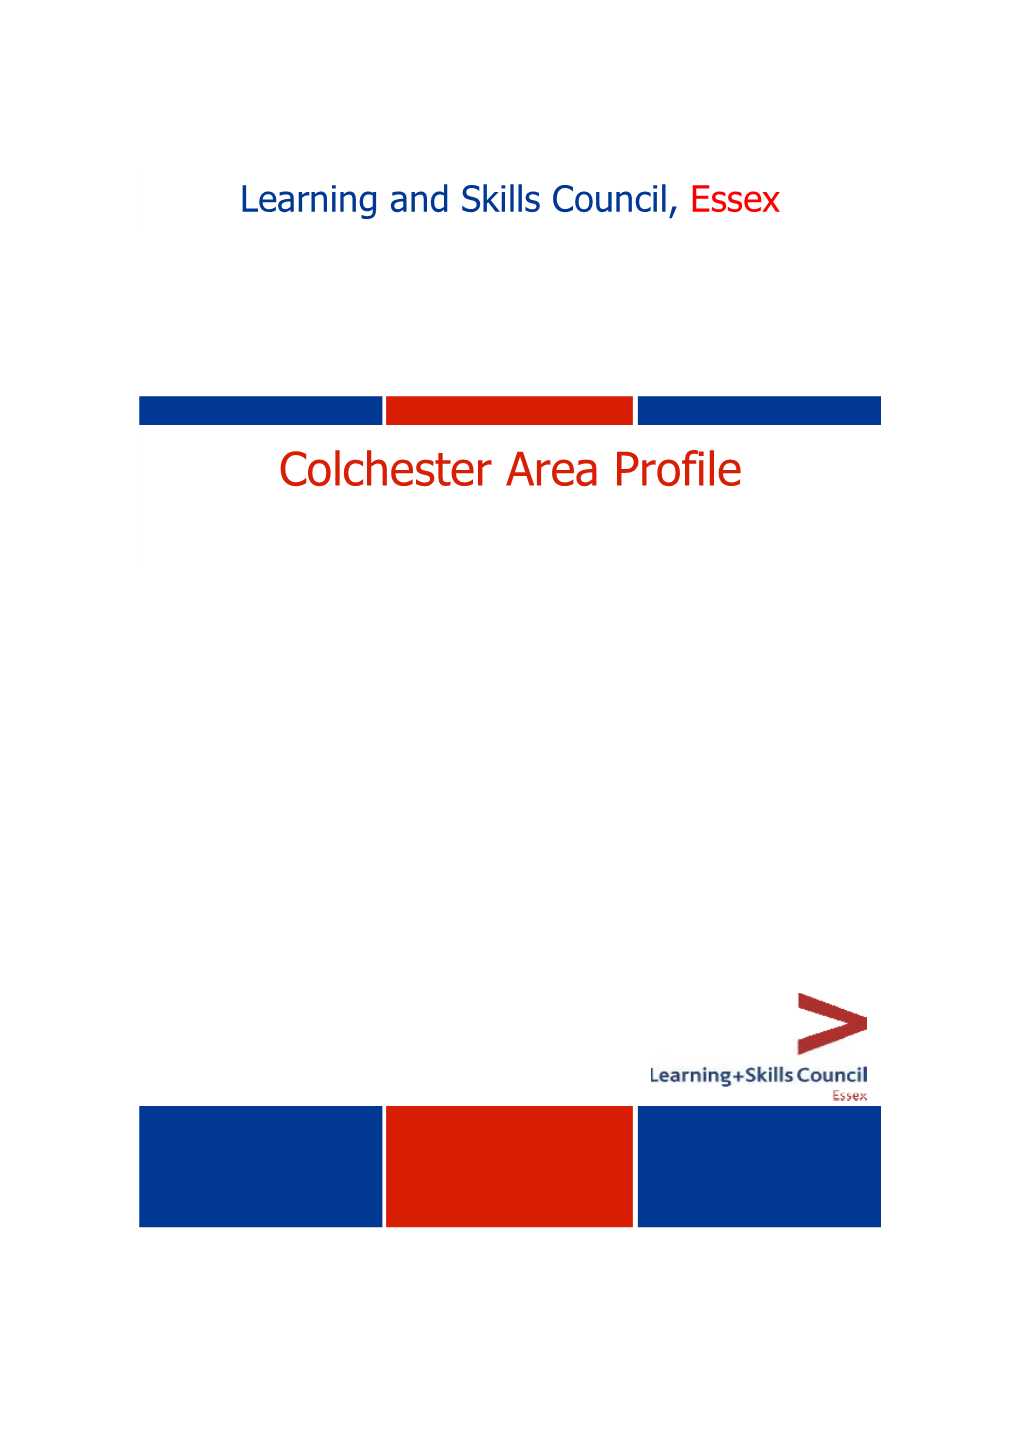 Colchester Area Profile 2003